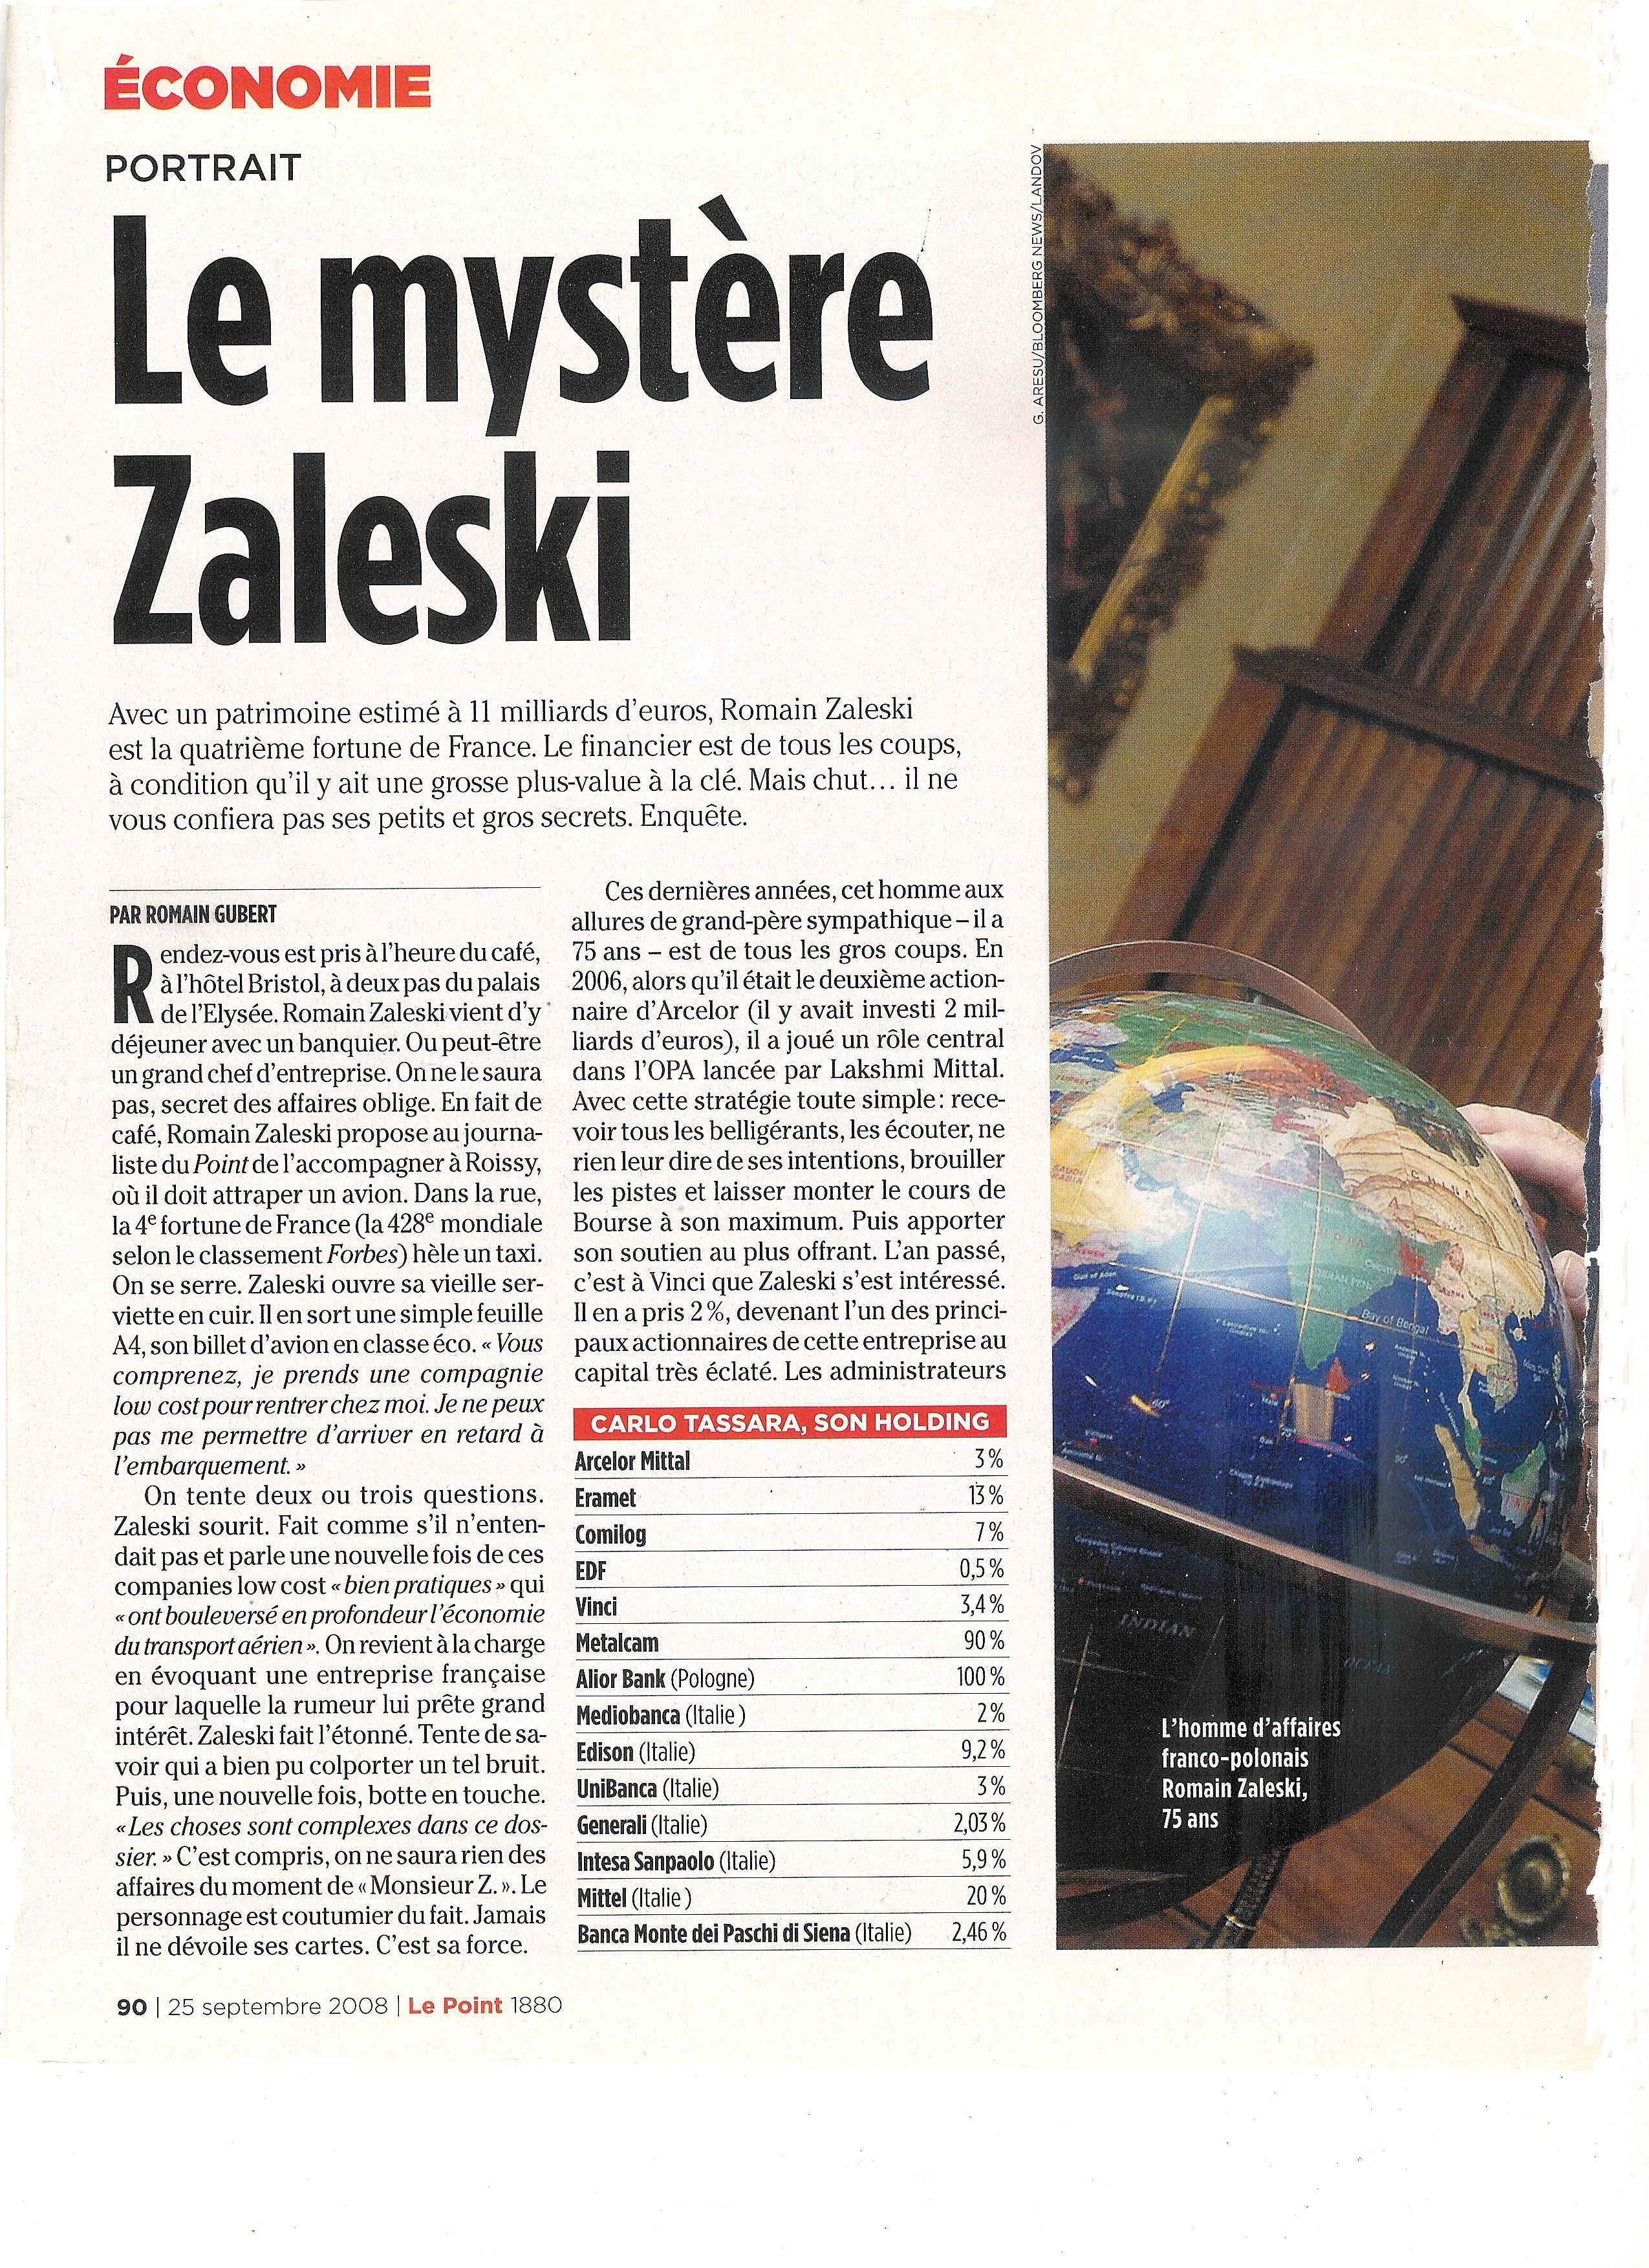 Le mystre Zaleski page 1